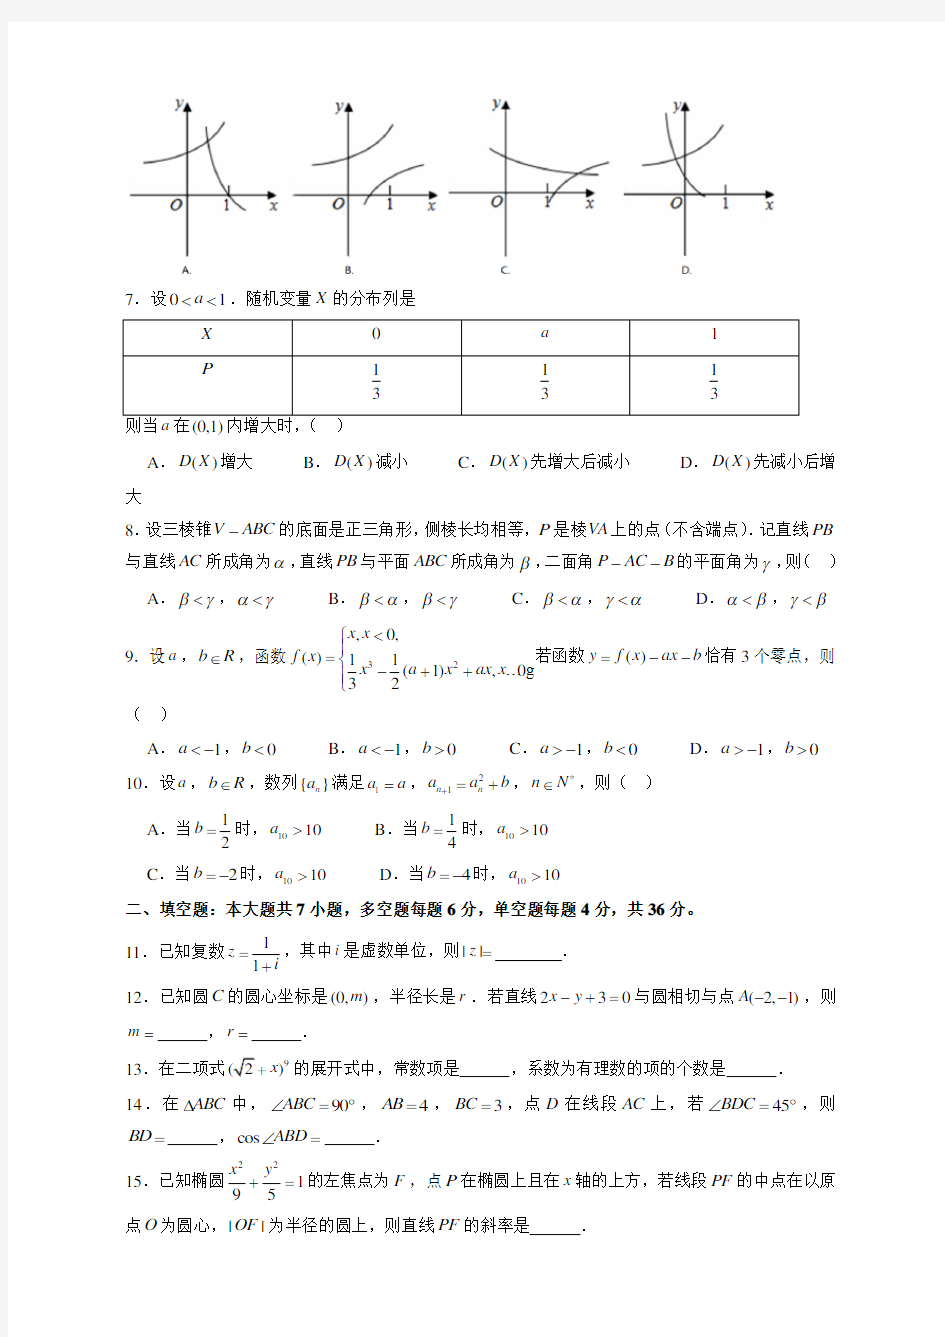 2019年浙江高考数学试题及答案解析-新